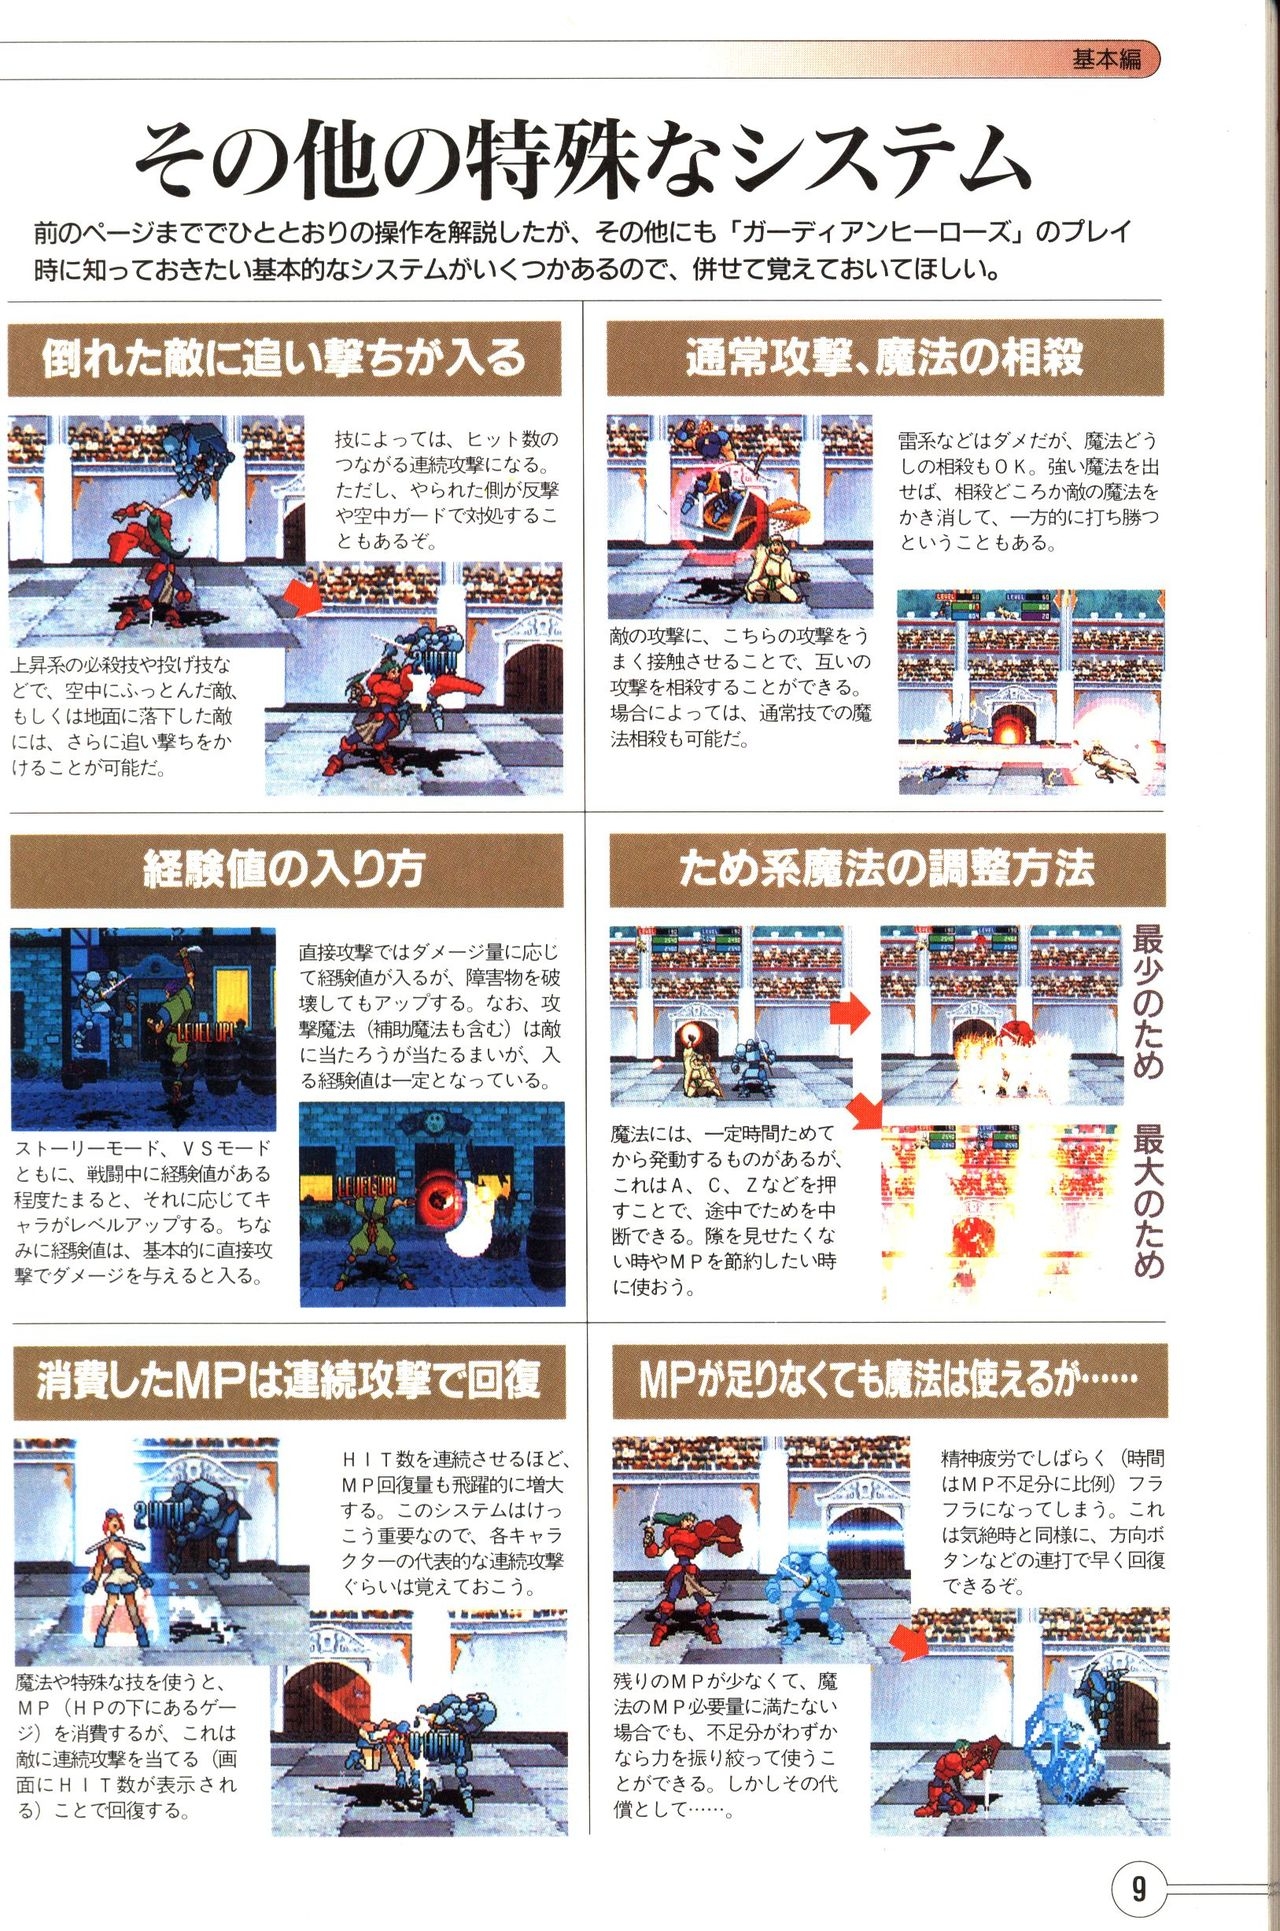 Guardian Heroes Perfect Guide (Sega Saturn magazine books) 11